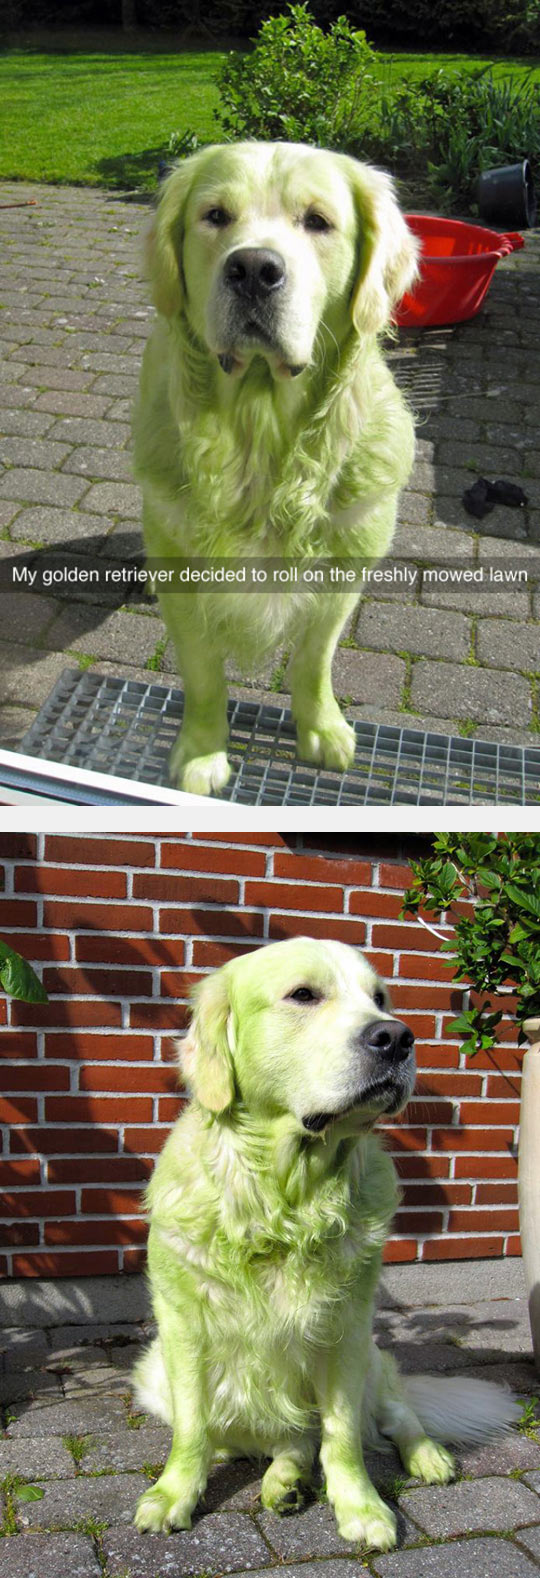 funny-dog-green-fur-mowed-lawn